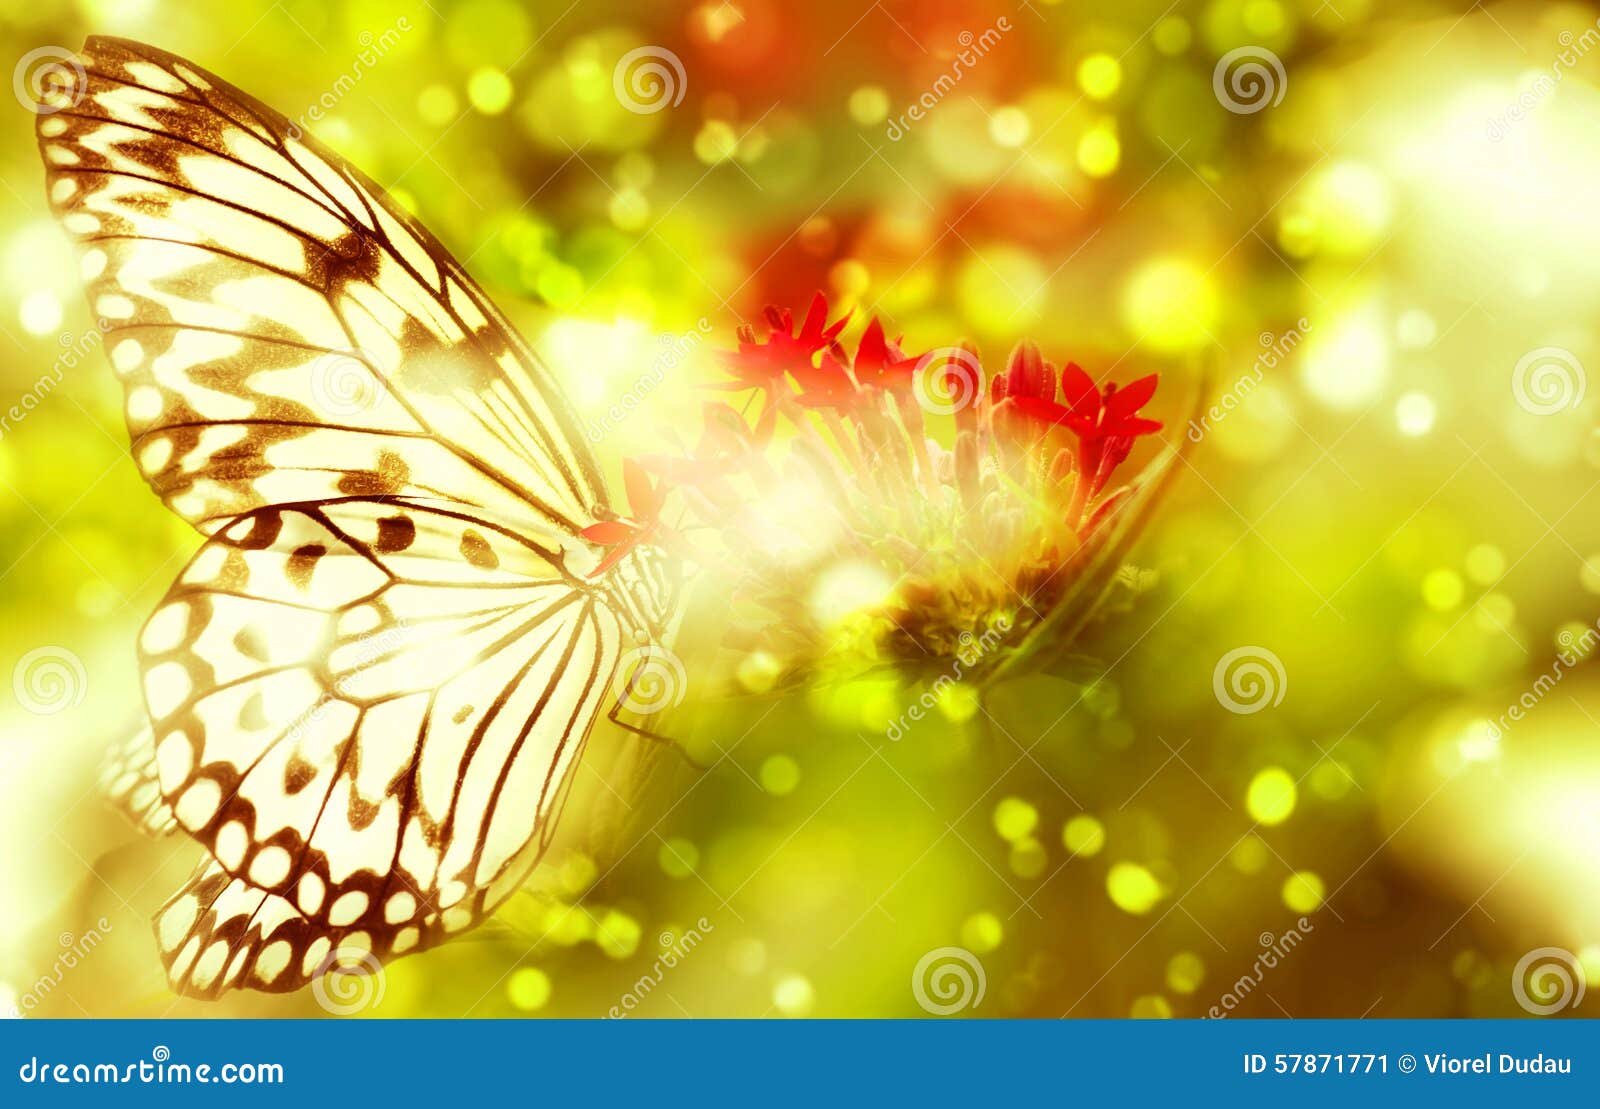 fantasy butterfly on flower